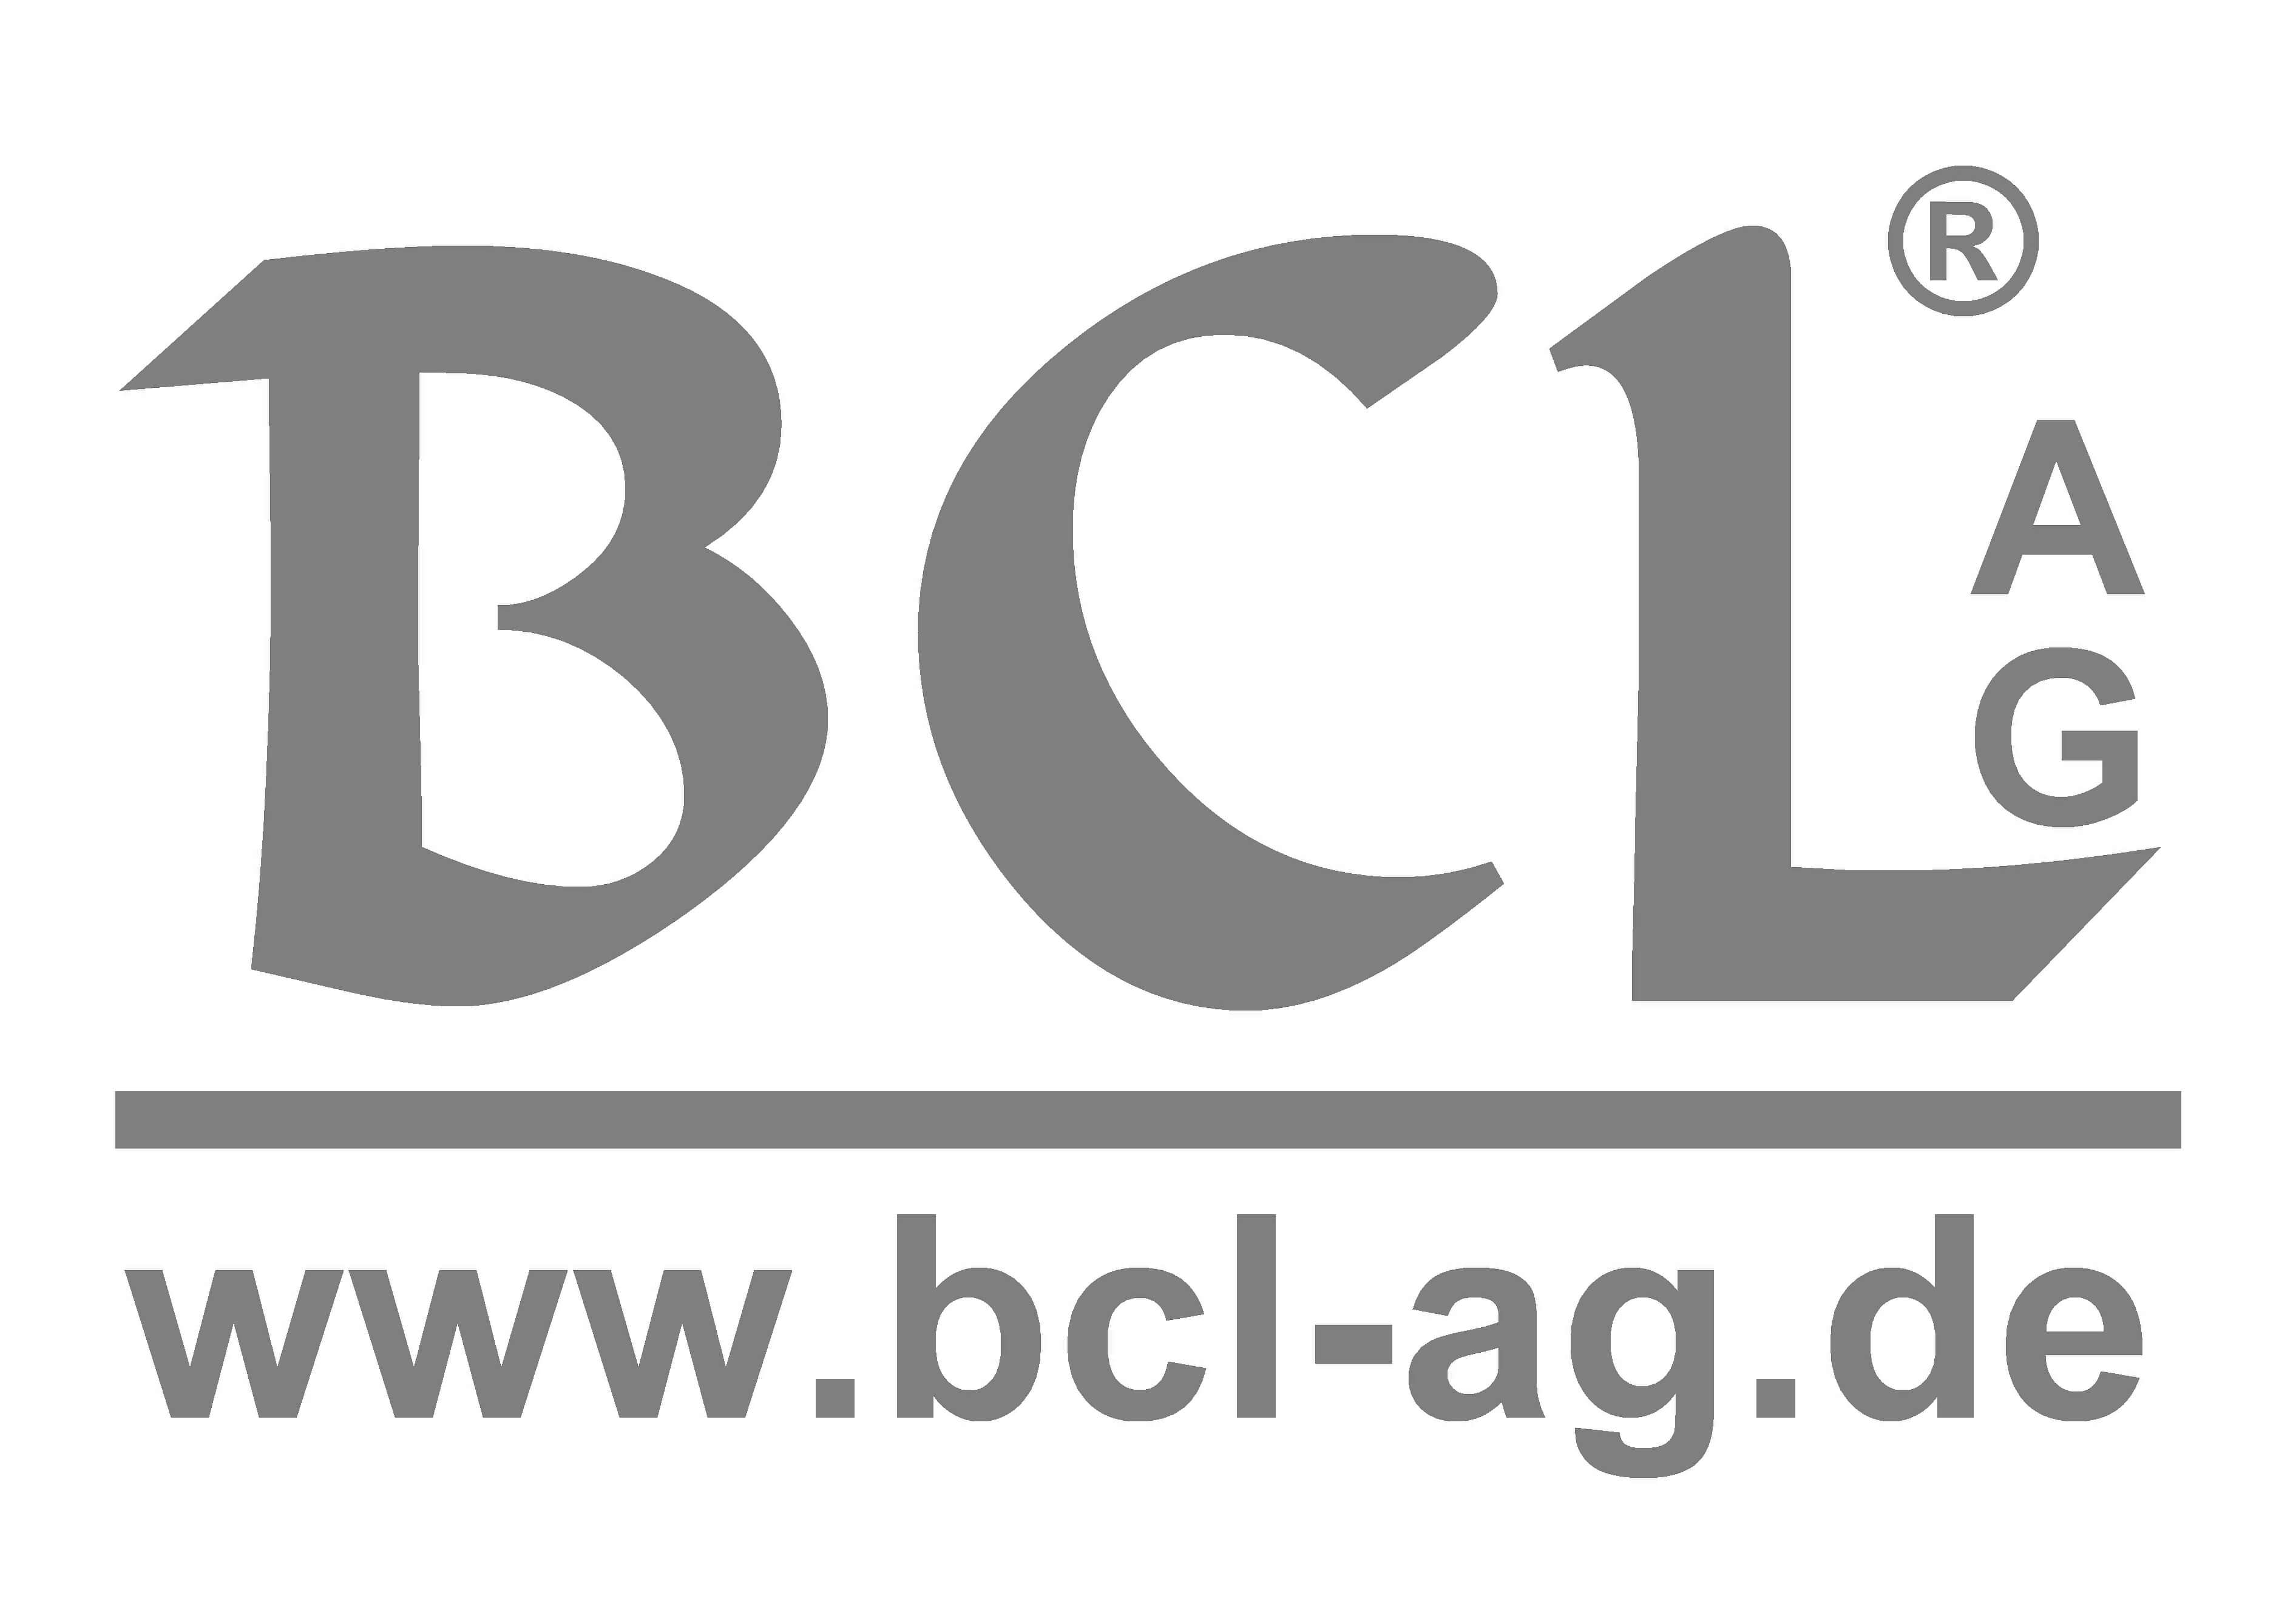 BCL AG